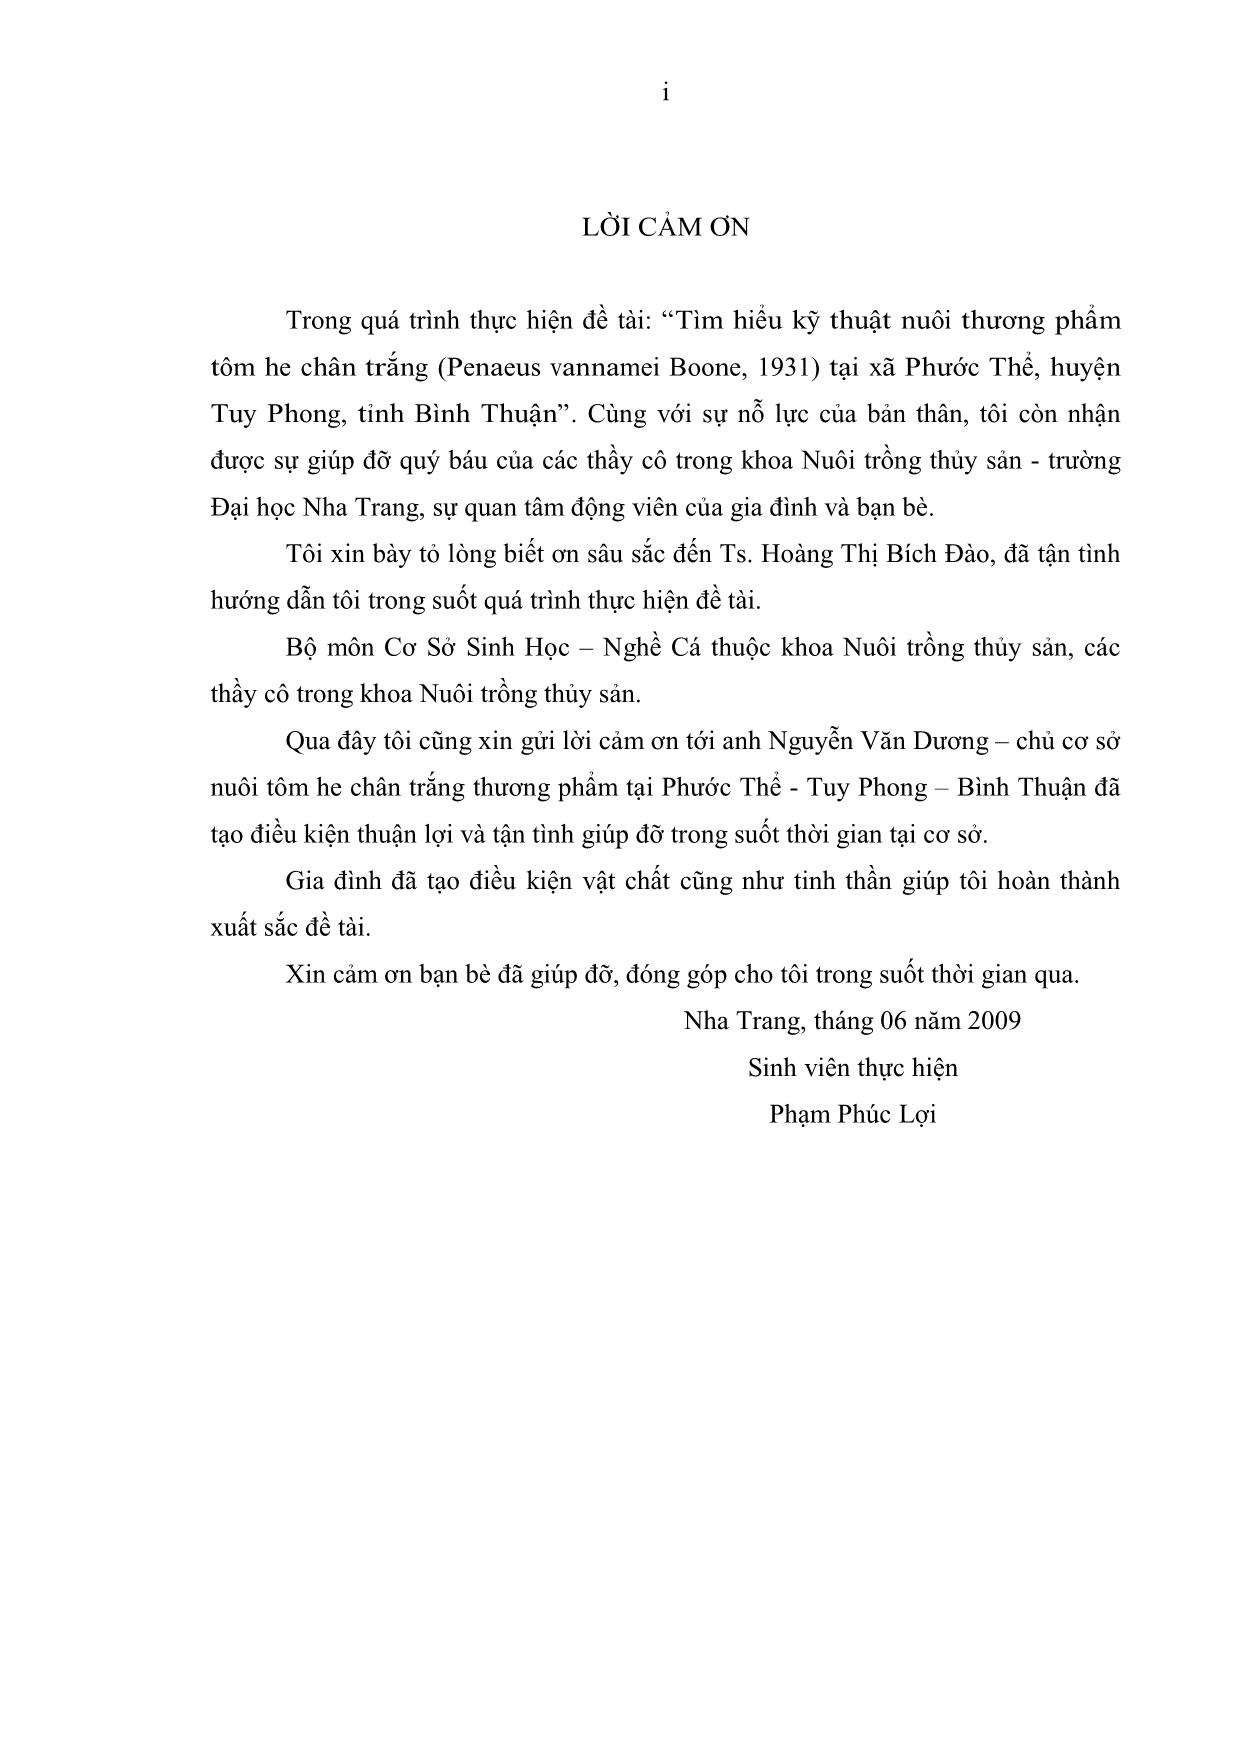 Đồ án Tìm hiểu kỹ thuật nuôi thương phẩm tôm he chân trắng (penaeus vannamei boone, 1931) tại xã Phước Thể, huyện Tuy Phong, tỉnh Bình Thuận trang 3